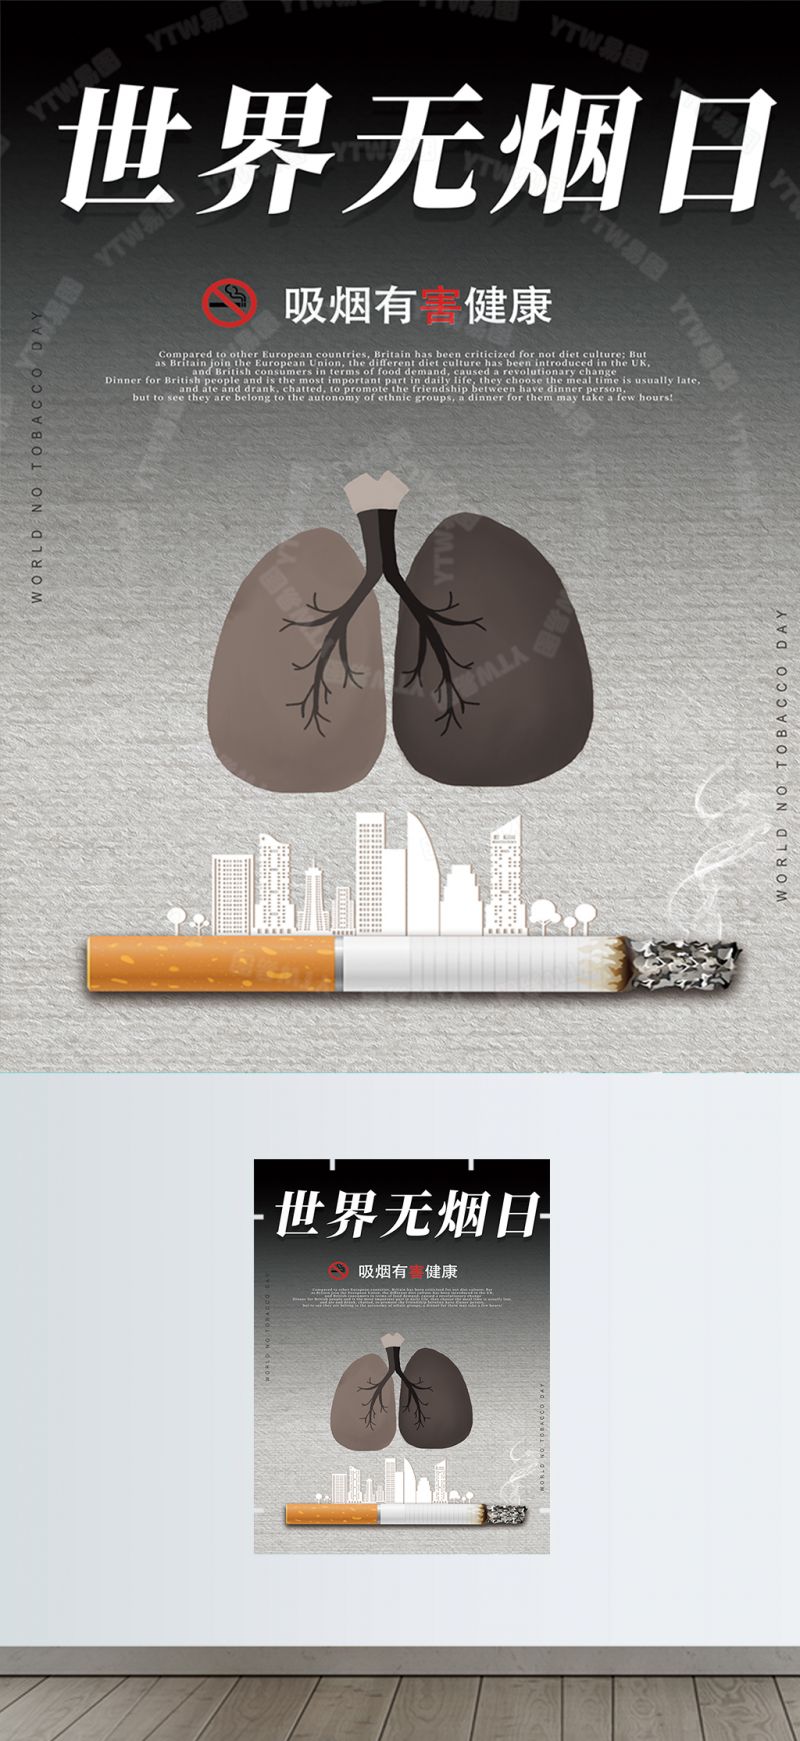 世界无烟日黑白灰宣传海报素材